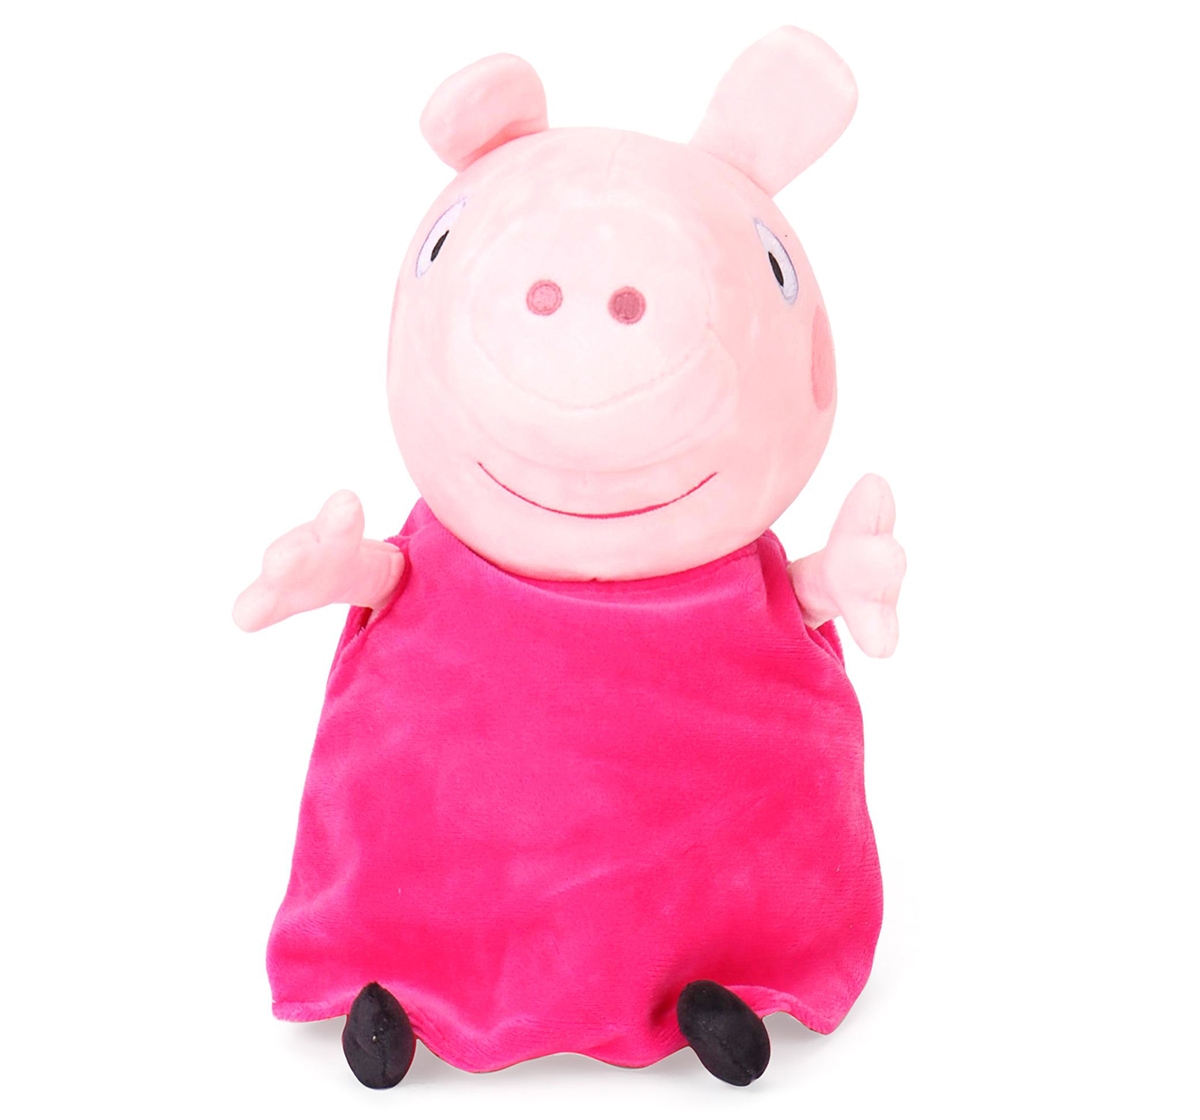 Granny Pig Plush 46 Cm, 0M+ (Multicolor)